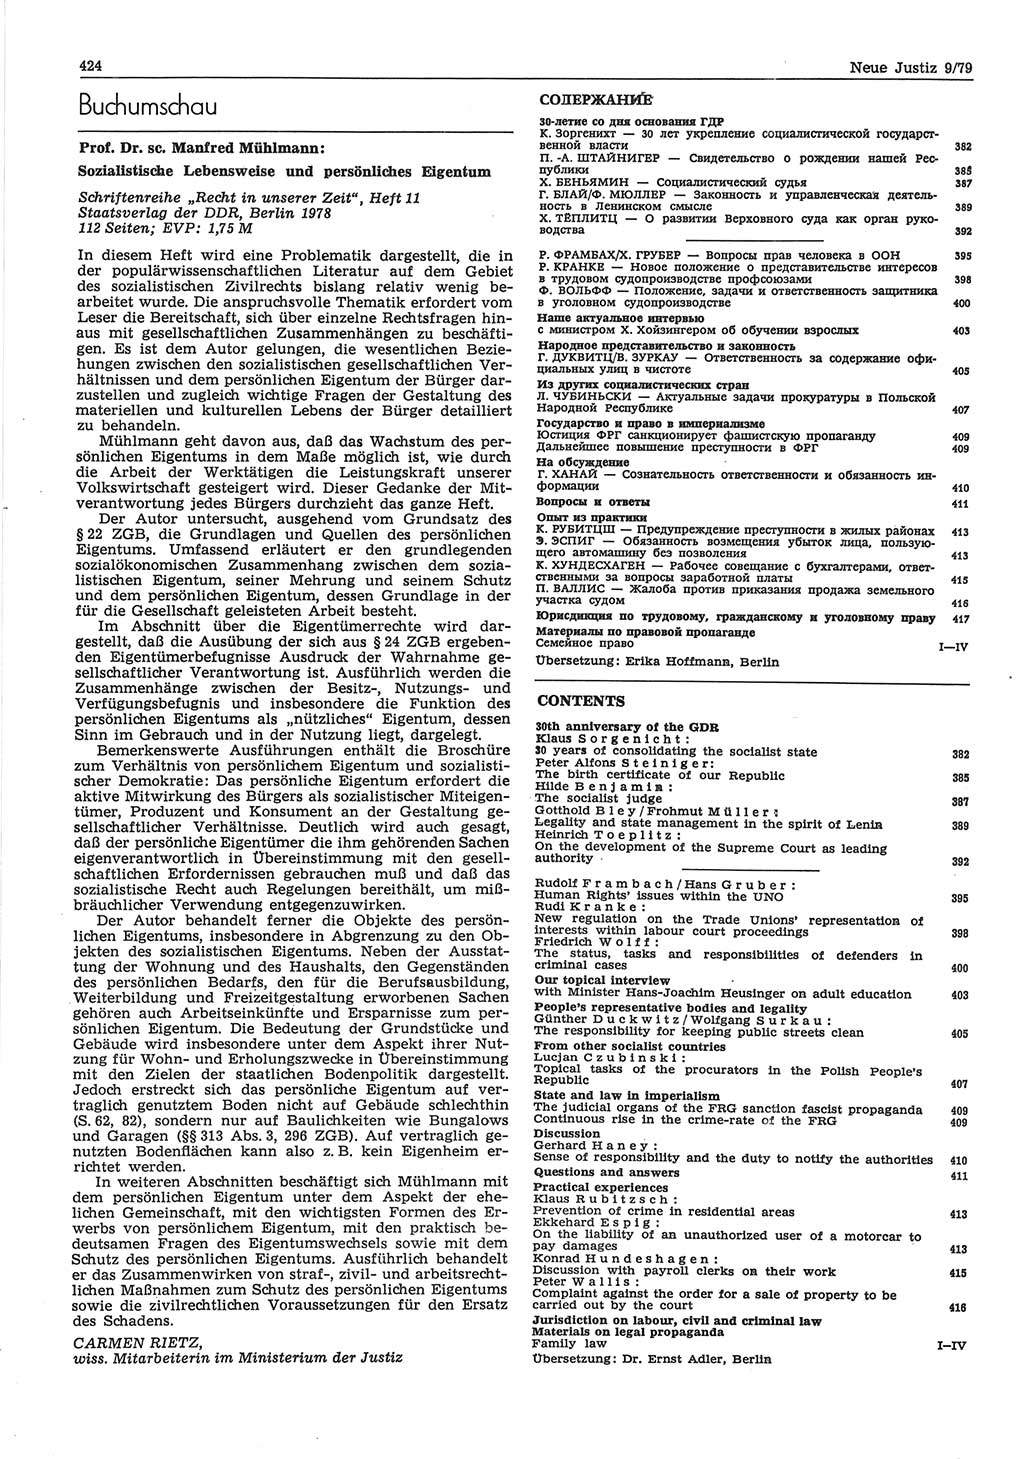 Neue Justiz (NJ), Zeitschrift für sozialistisches Recht und Gesetzlichkeit [Deutsche Demokratische Republik (DDR)], 33. Jahrgang 1979, Seite 424 (NJ DDR 1979, S. 424)